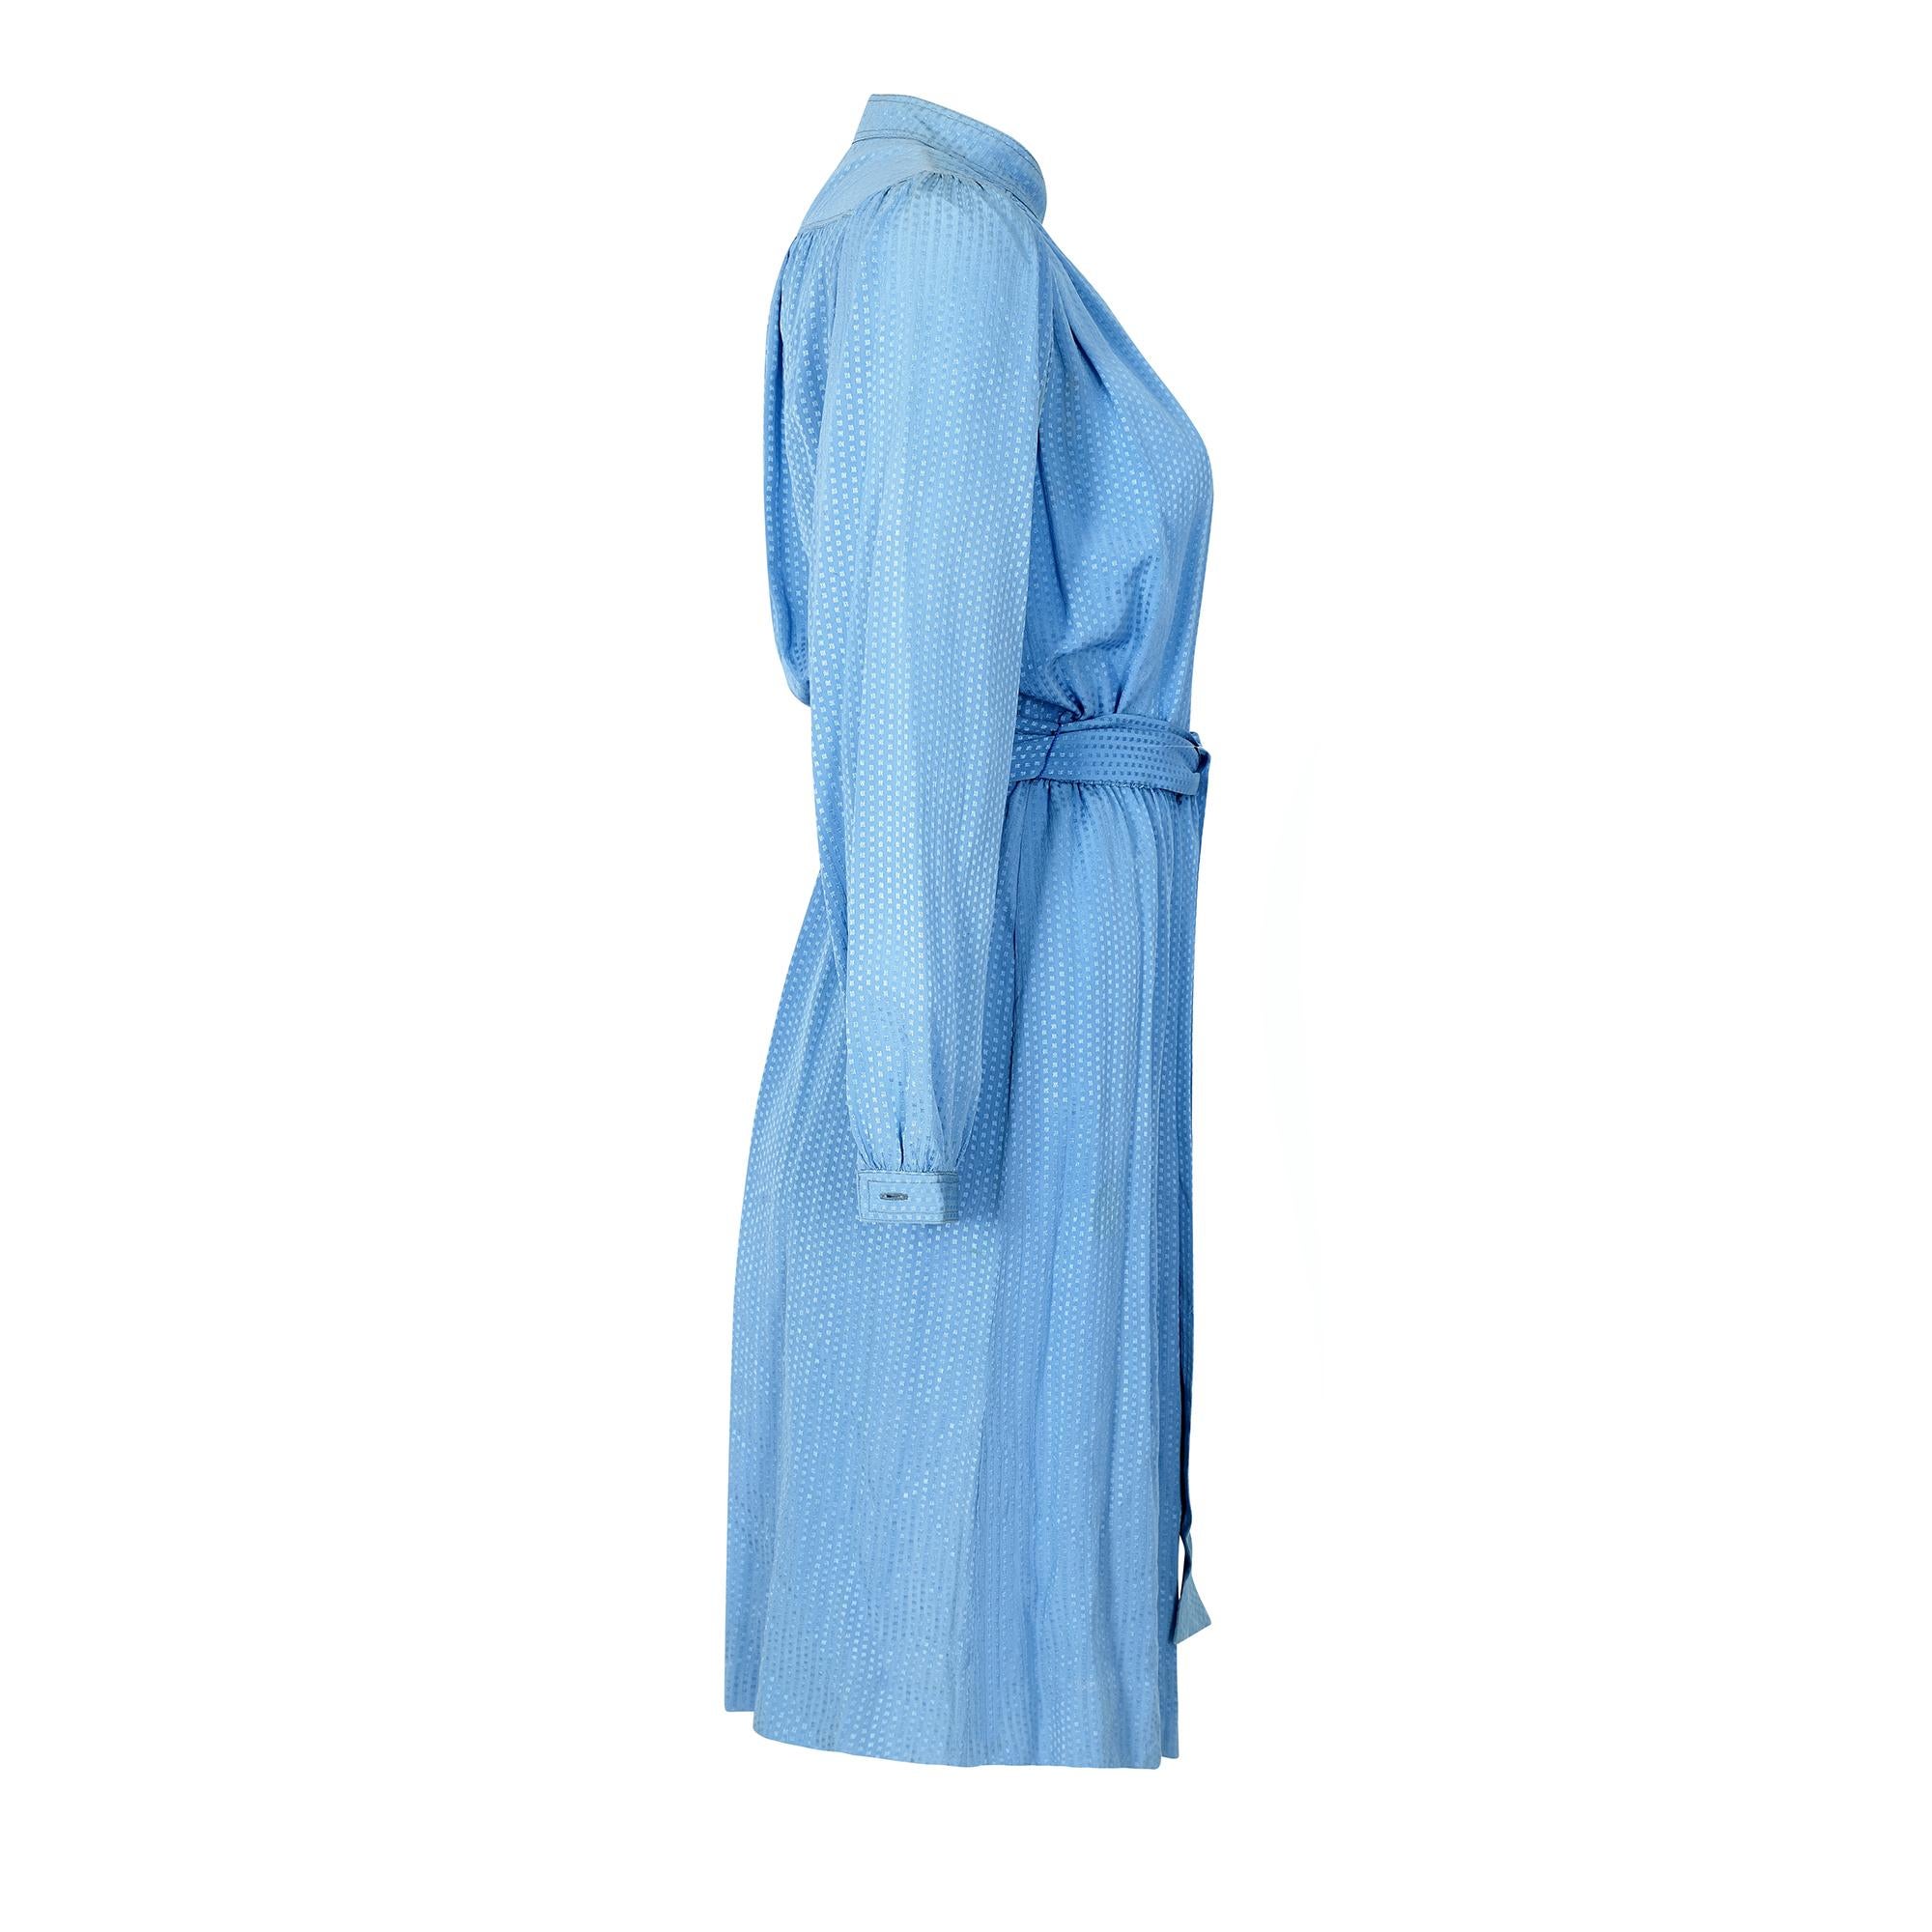 Superstylische 1970er-Jahre-Seidenkleidung von Louis Feraud mit hohem, offenem Kragen, Knöpfen an der Vorderseite und Gummizug in der Taille. Eine breite Kellerfalte an der Vorderseite des Kleides sorgt für Bewegungsfreiheit, und das Kleid wird mit